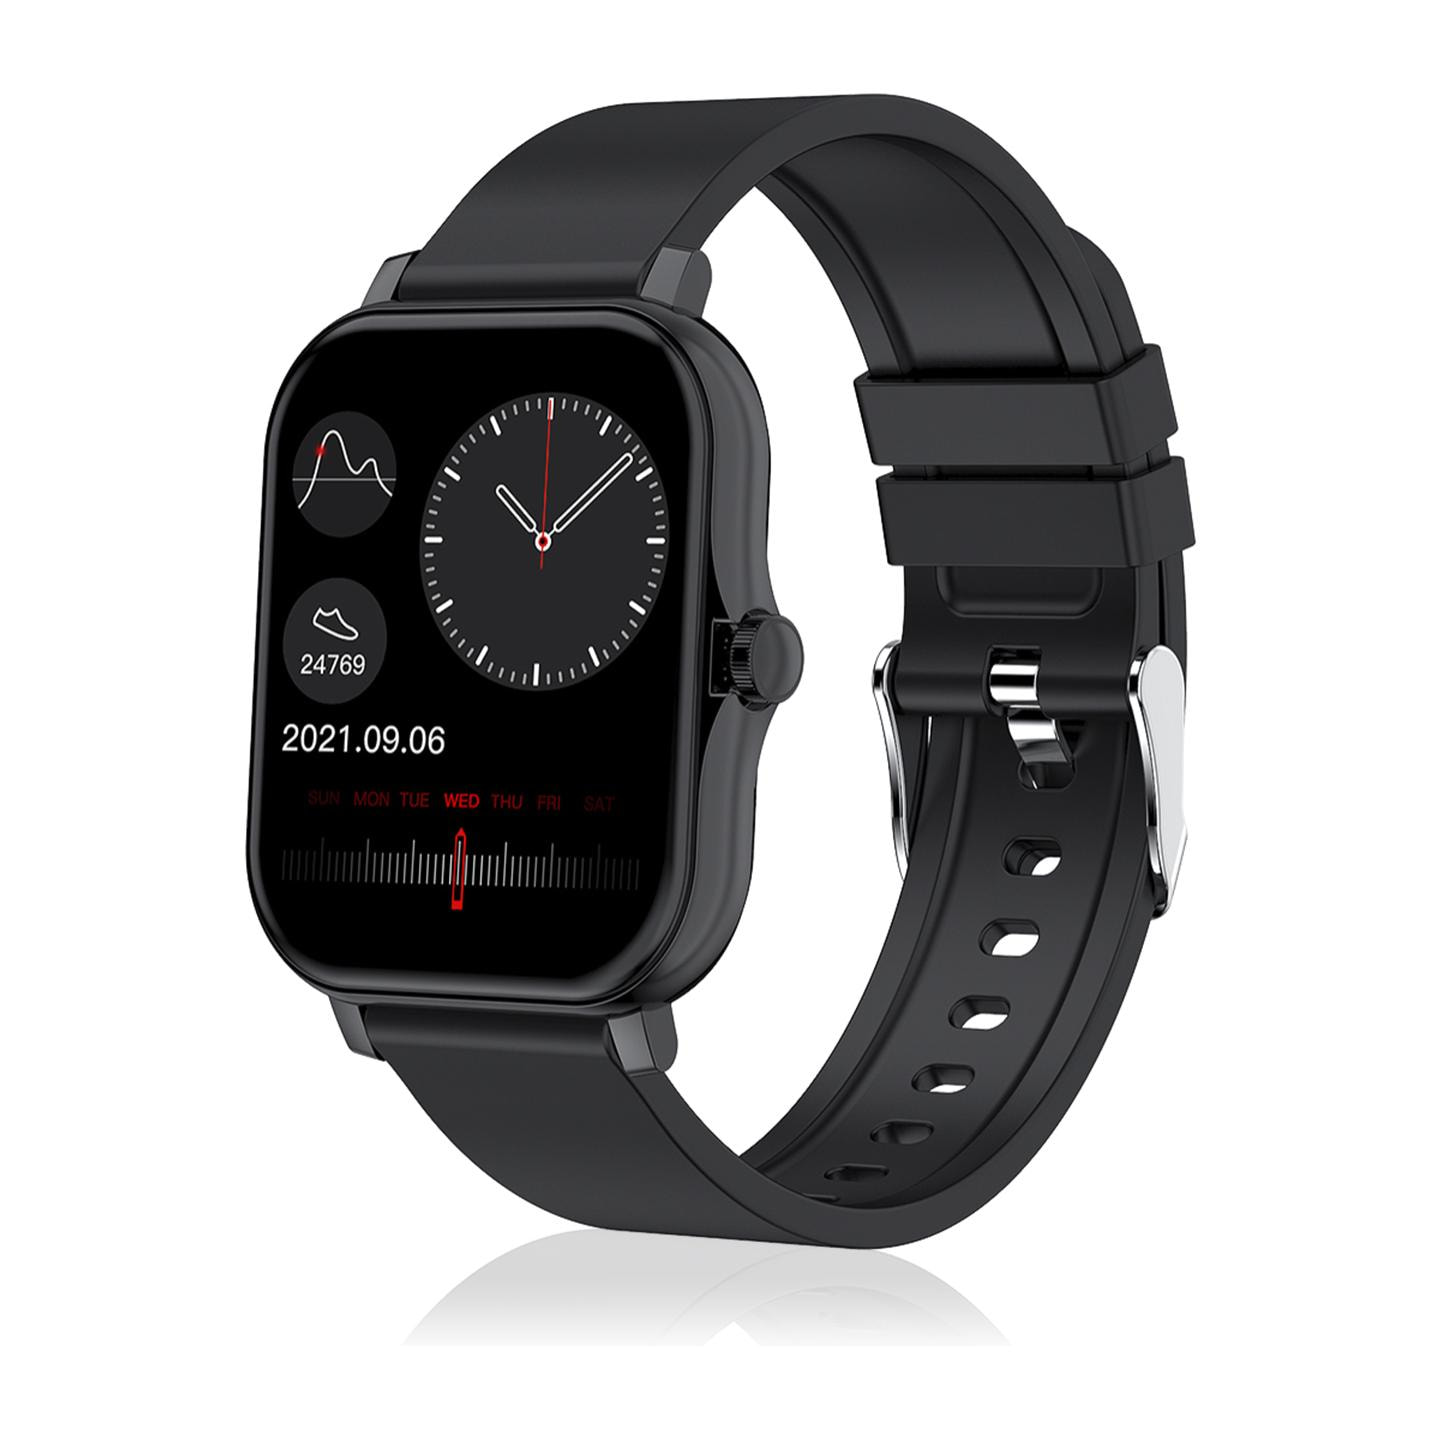 Smartwatch H30 con monitor de tensión y O2 en sangre, corona lateral funcional, notificaciones de aplicaciones.